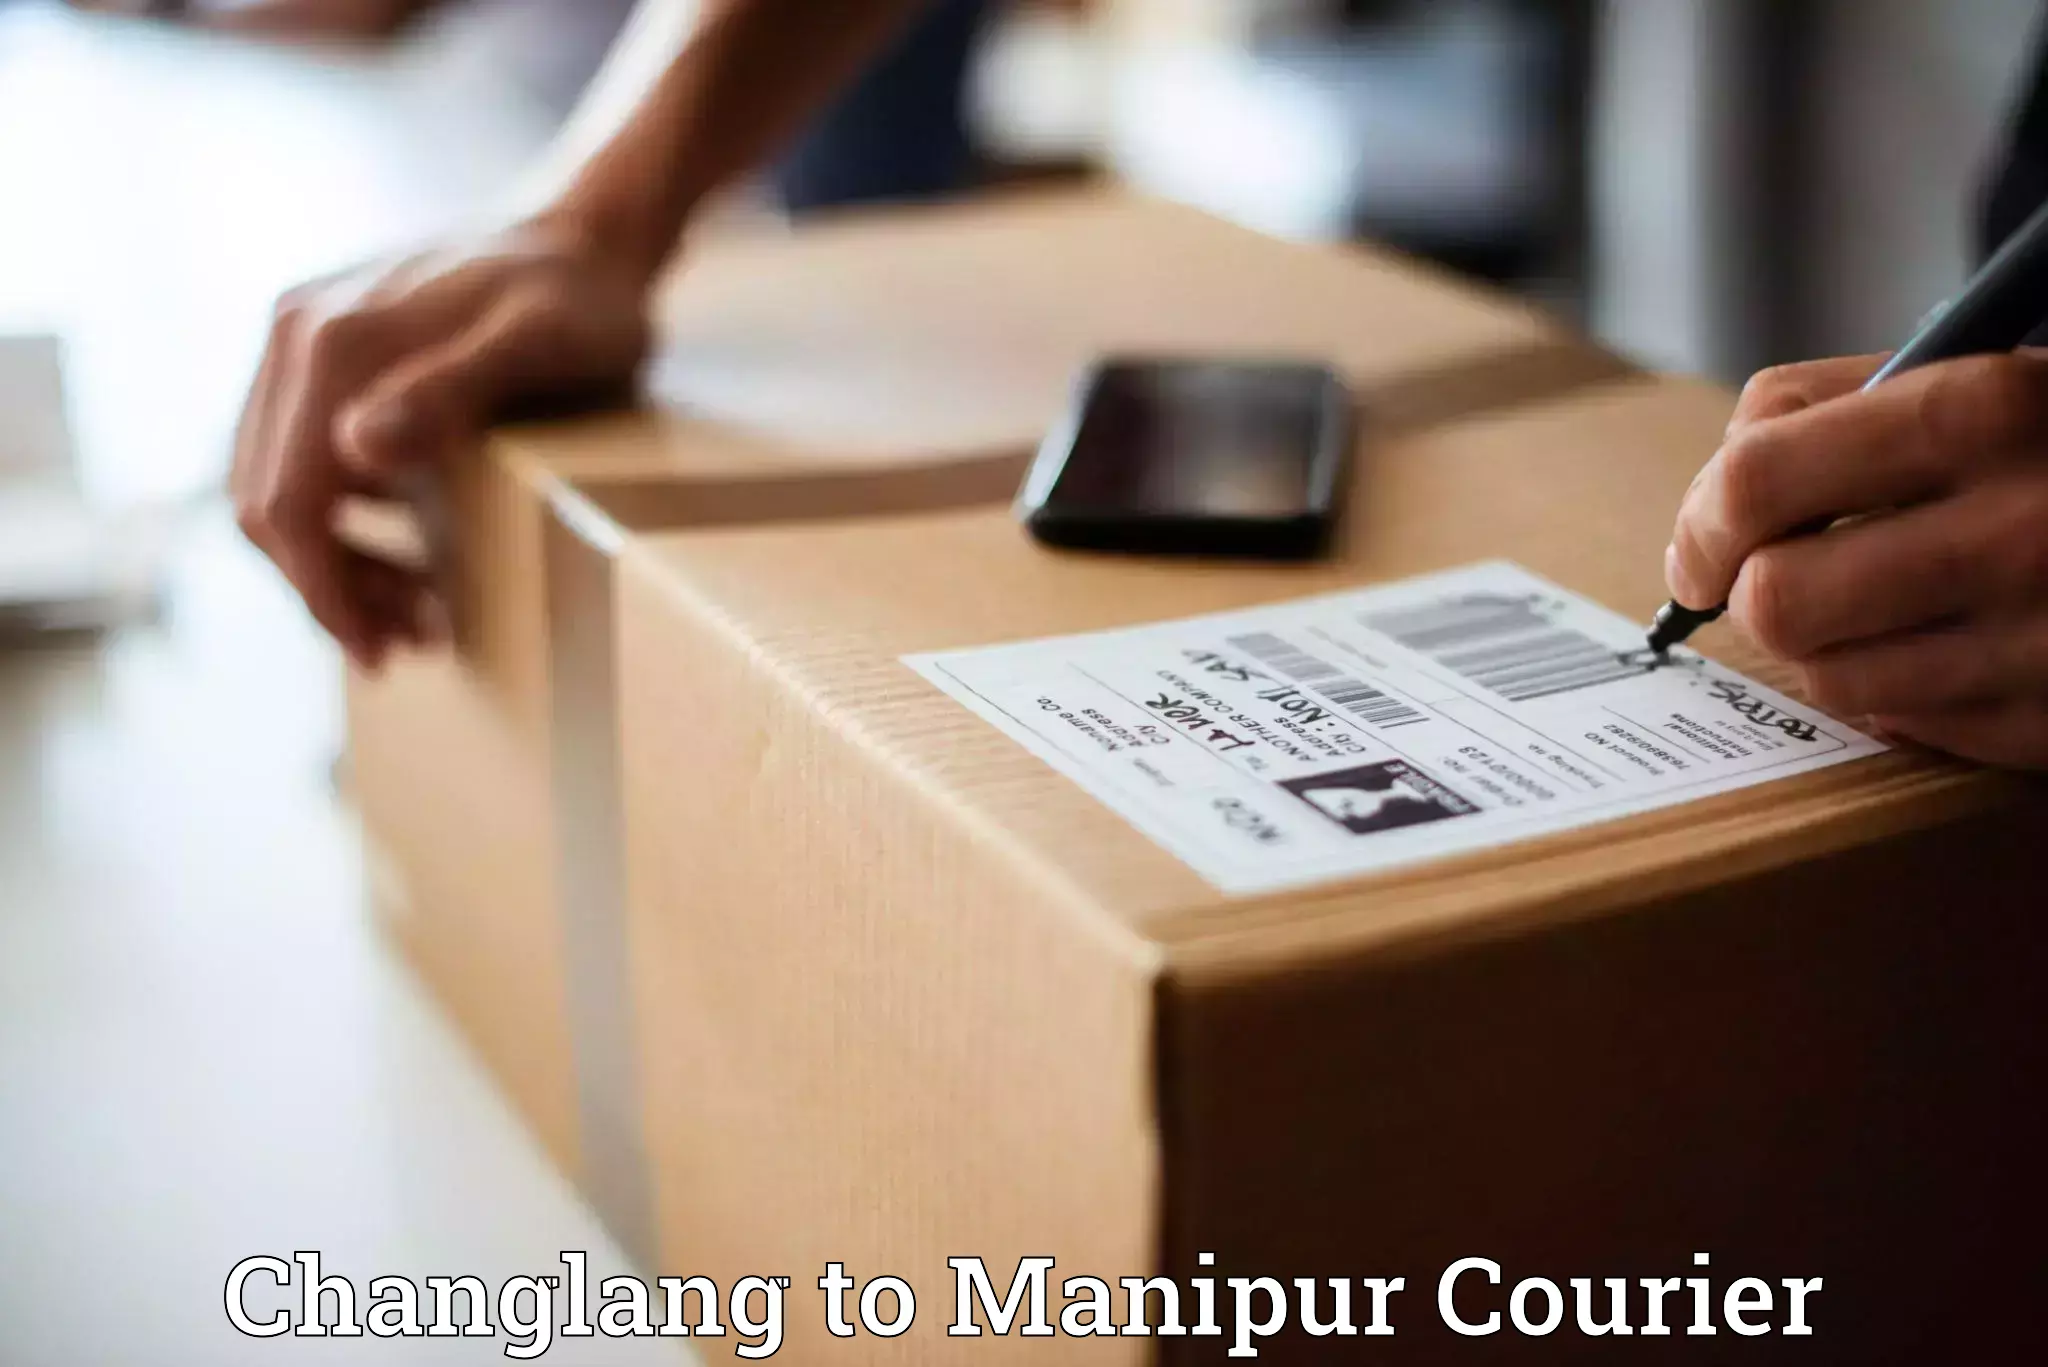 International courier networks Changlang to Kangpokpi